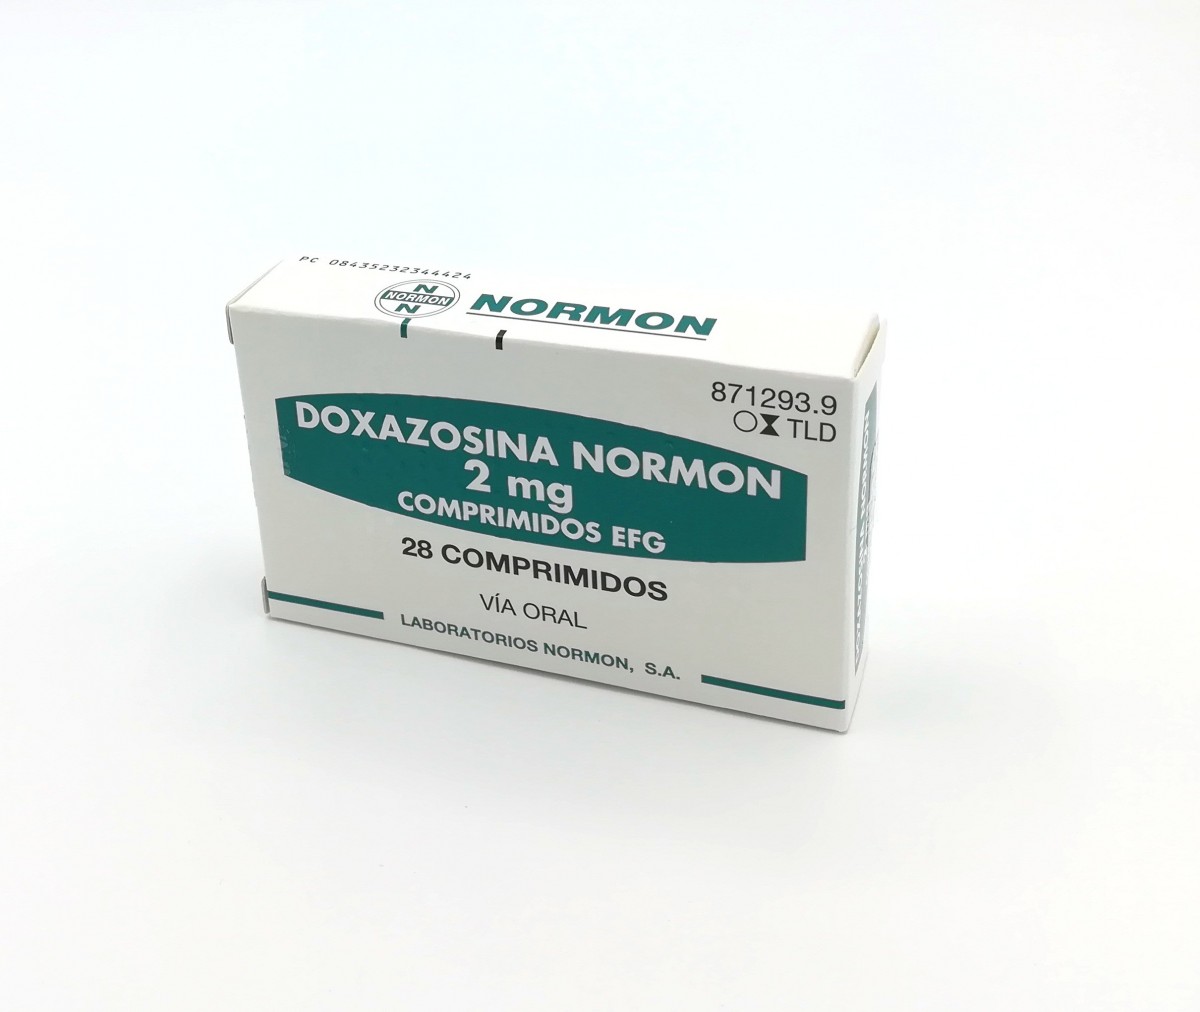 DOXAZOSINA NORMON 2 mg COMPRIMIDOS EFG , 28 comprimidos fotografía del envase.